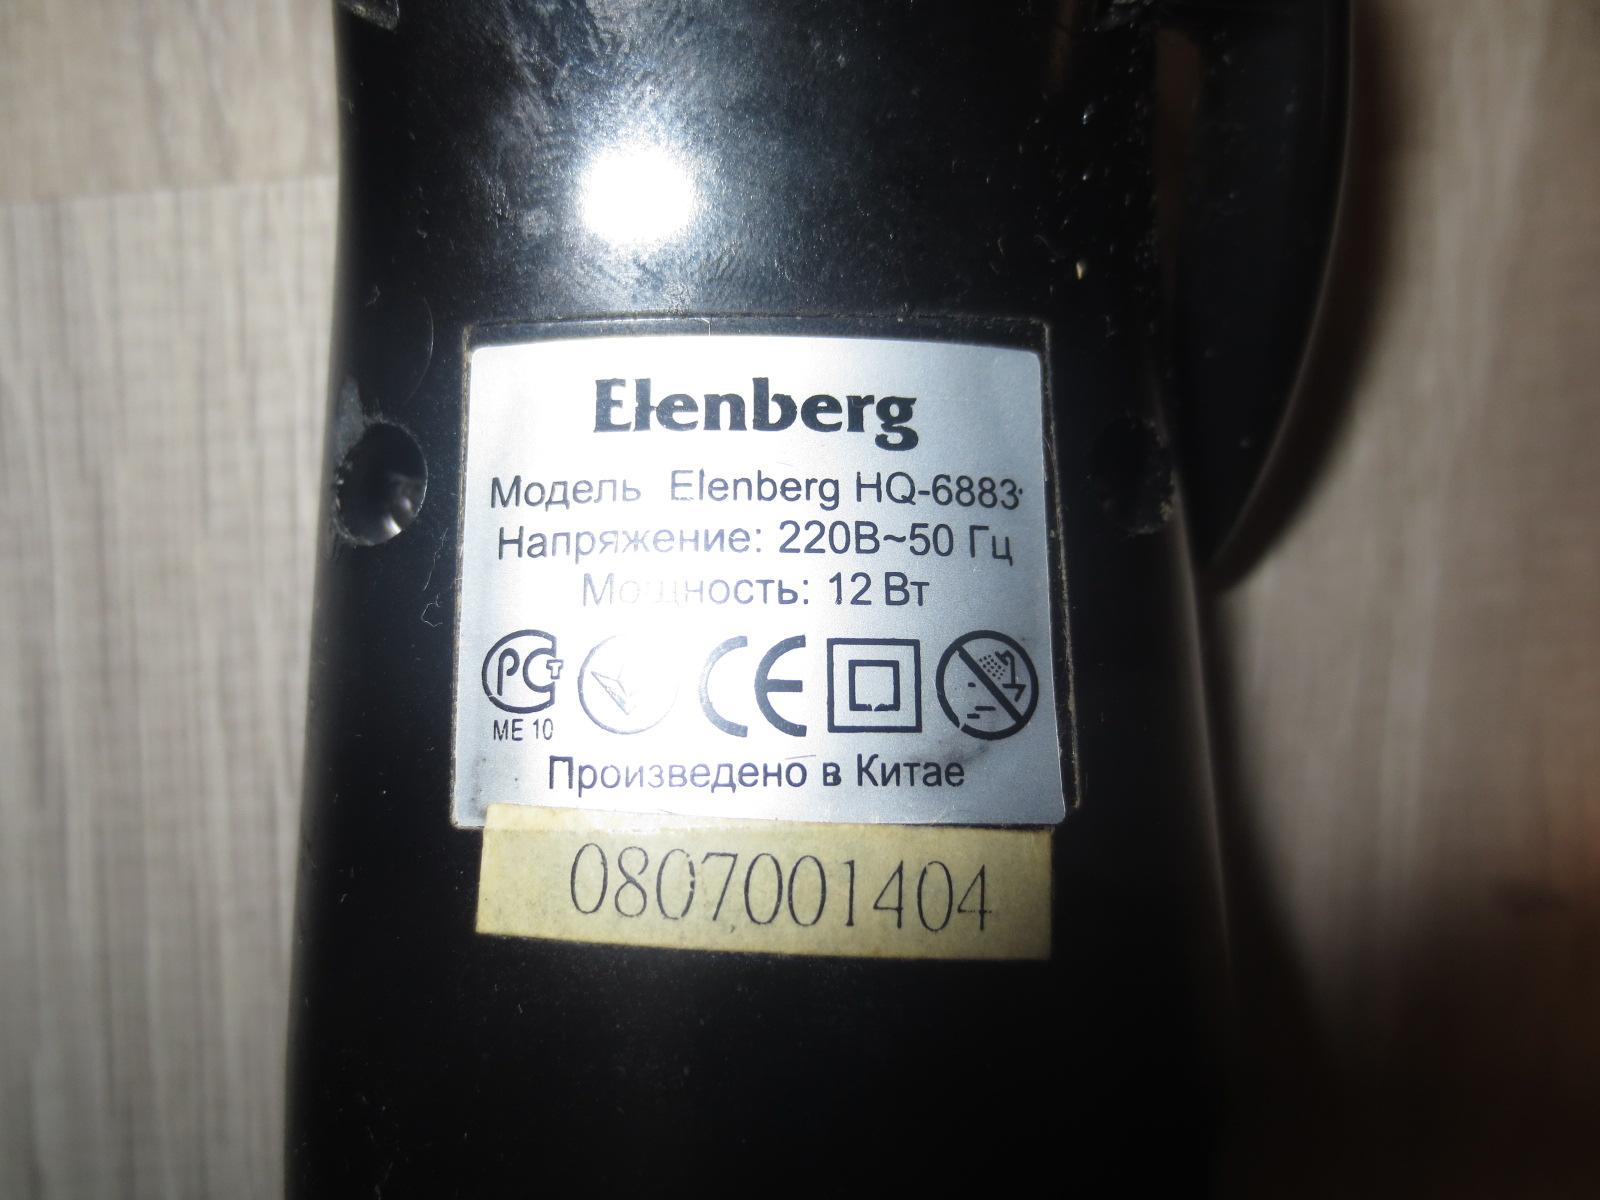 Машинка для стрижки elenberg hq-6888 инструкция